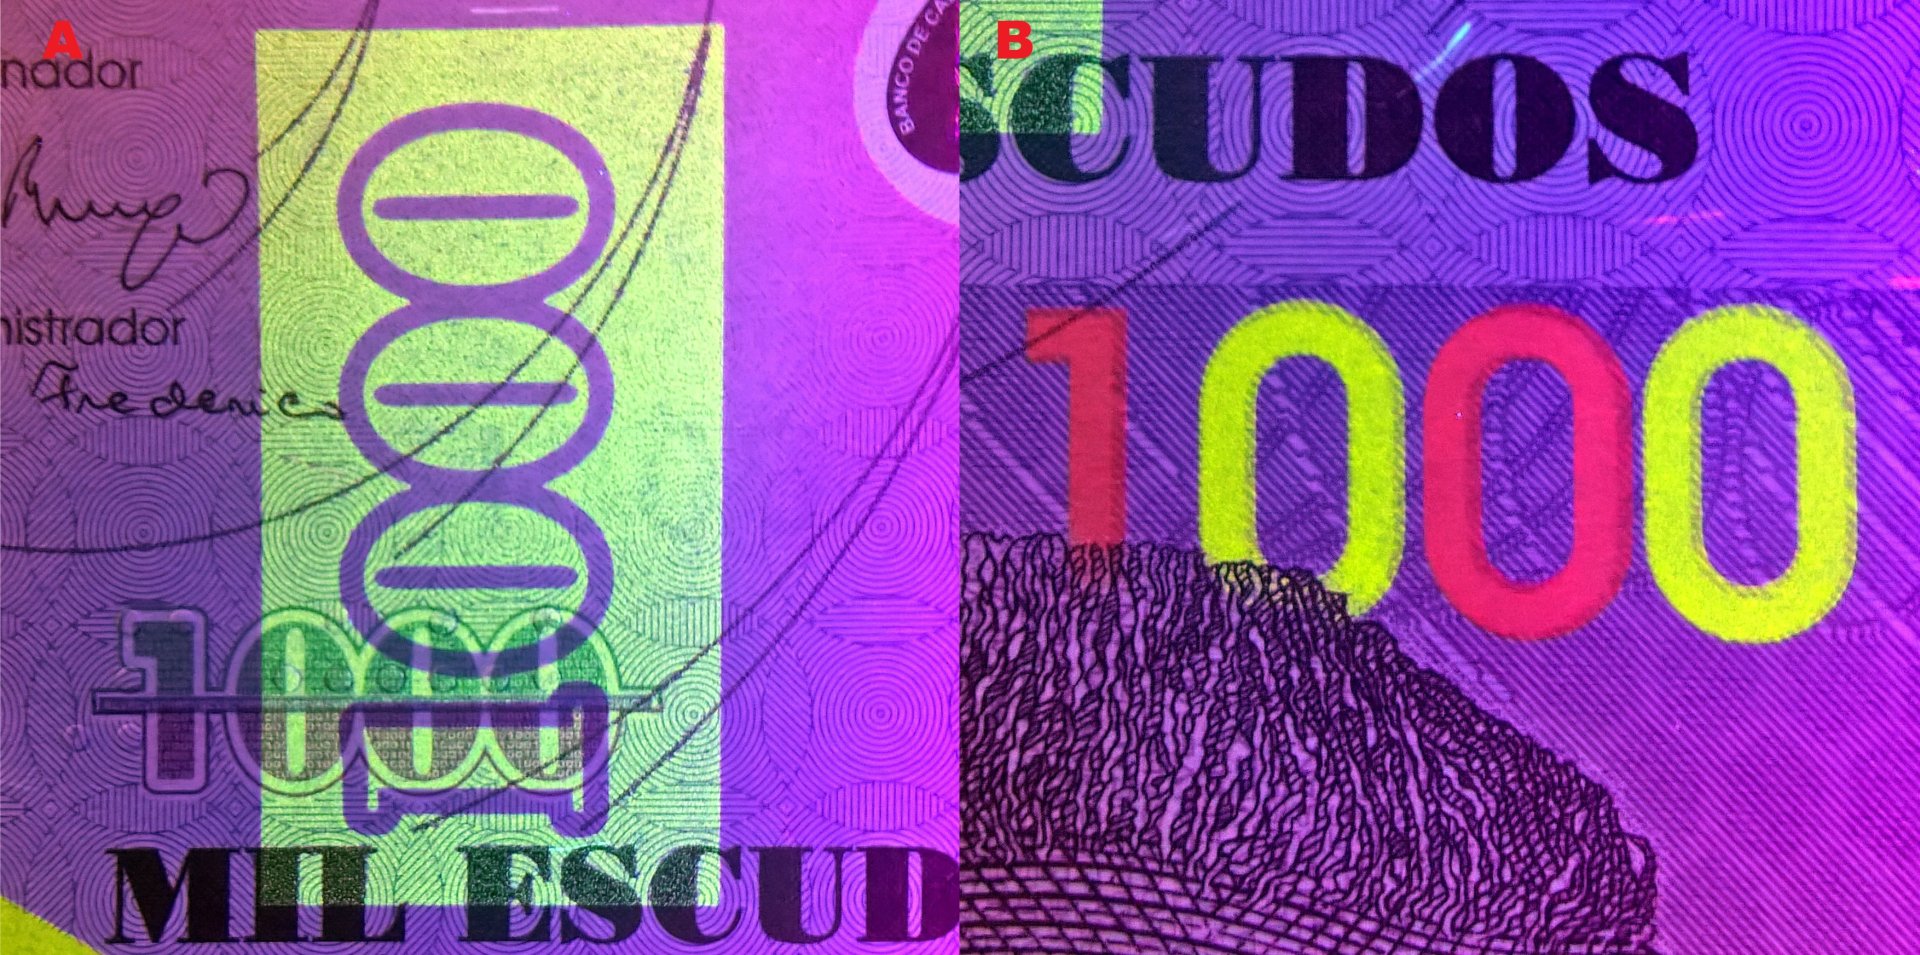 5. A) Nominální UV pozitivní pole na averzu bankovky. B) UV pozitivní nominál "1000" s dvojbarvenou změnou kolorizace